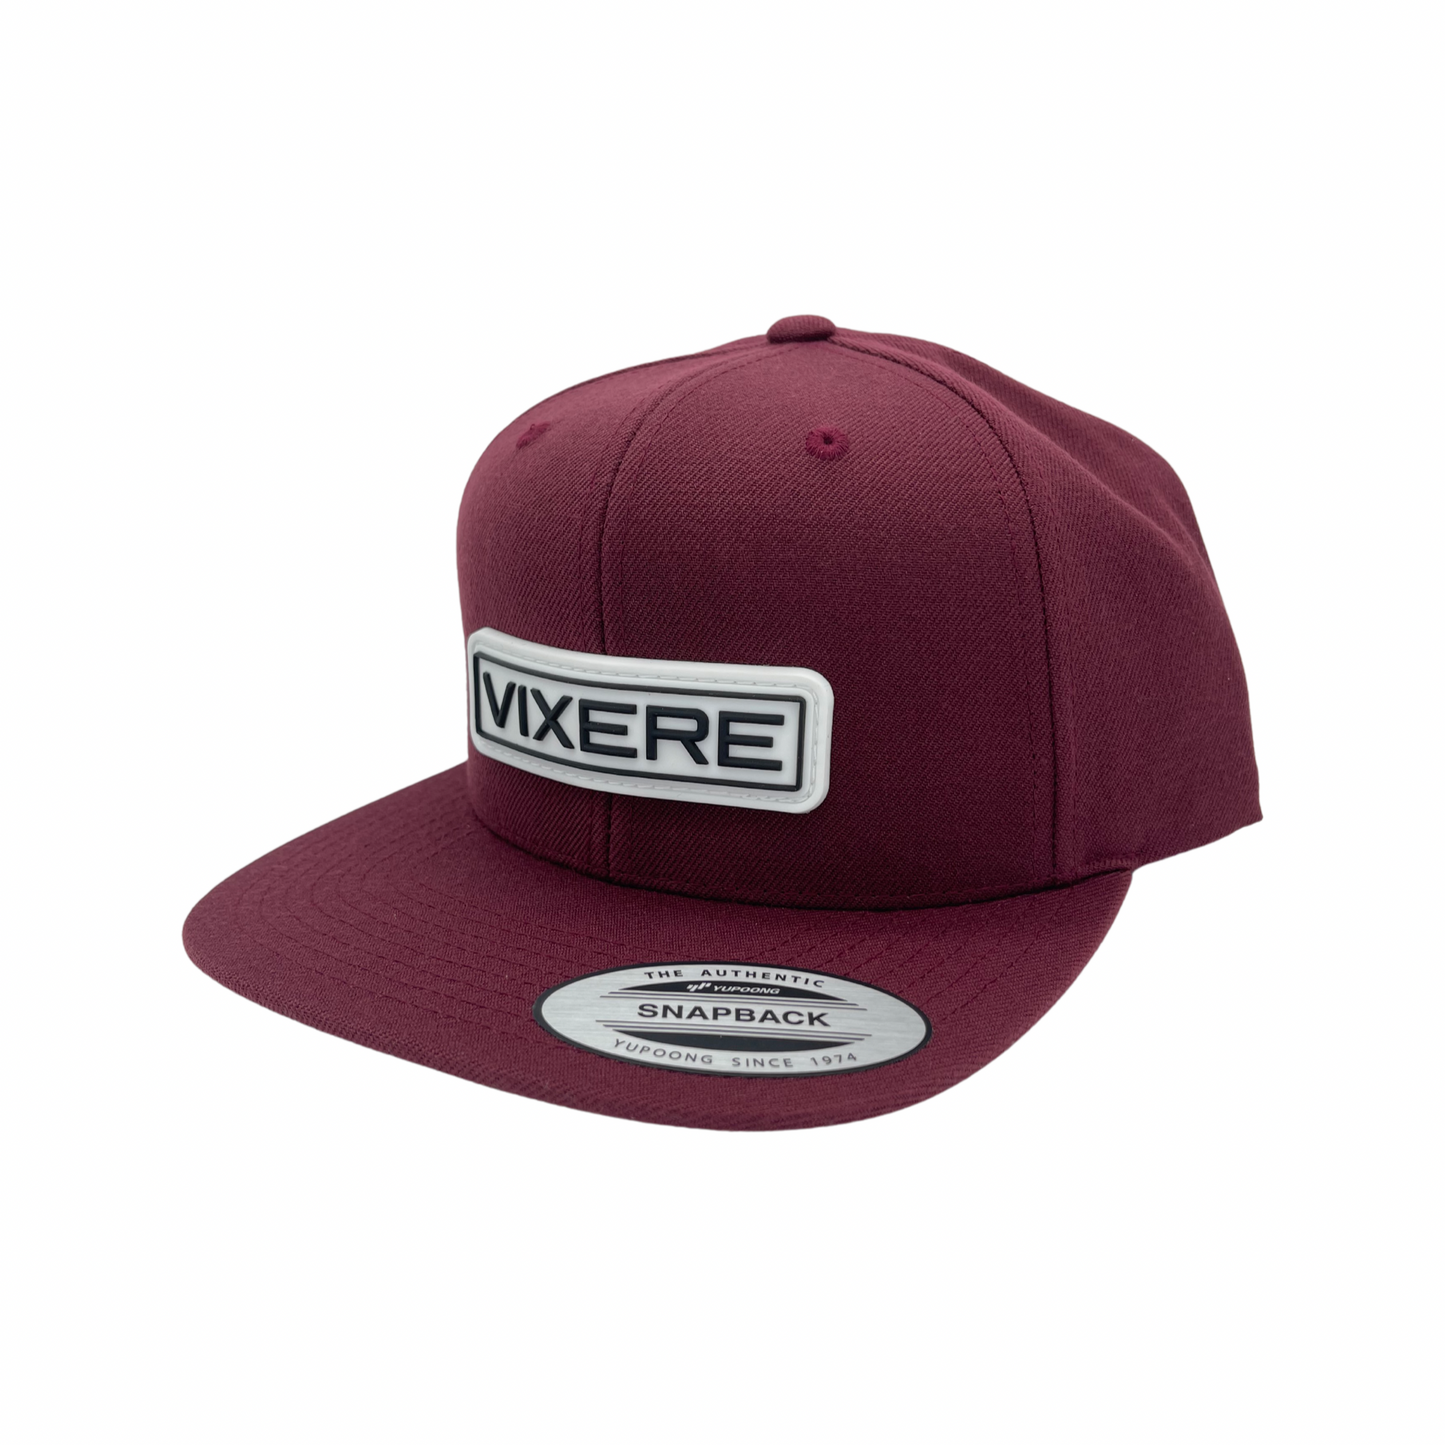 Vixere OG Classic Snapback Hats